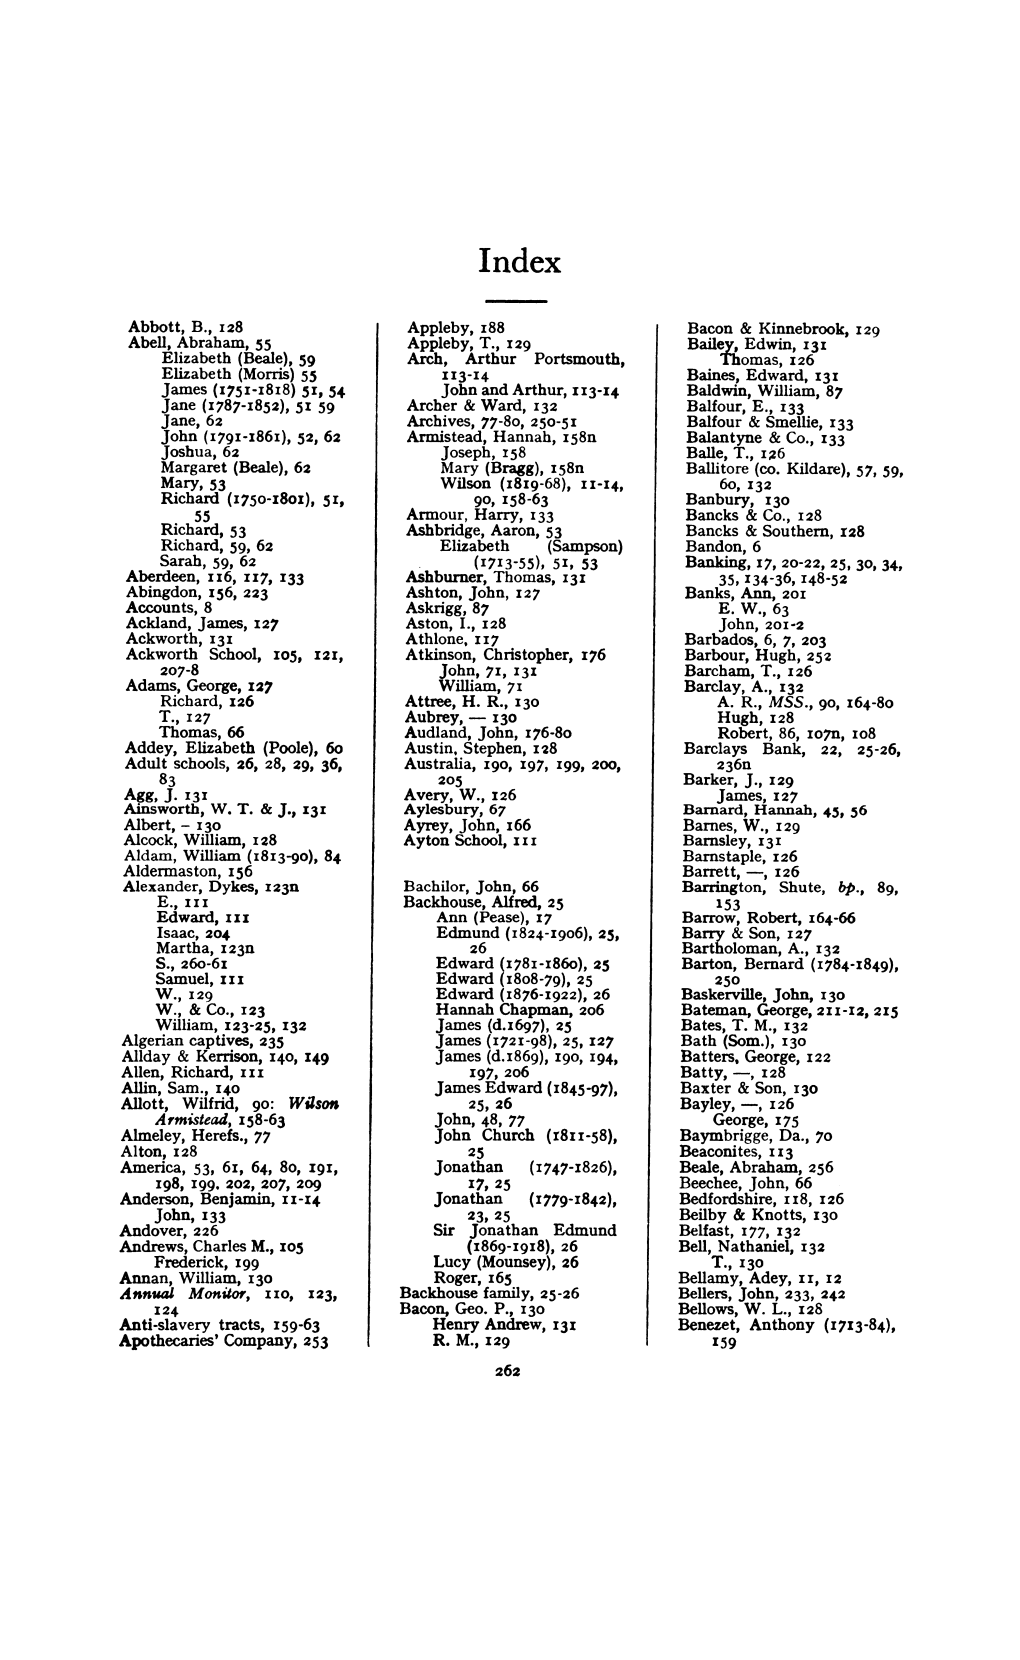 Anti-Slavery Tracts, 159-63 Apothecaries' Company, 253 Ayrey